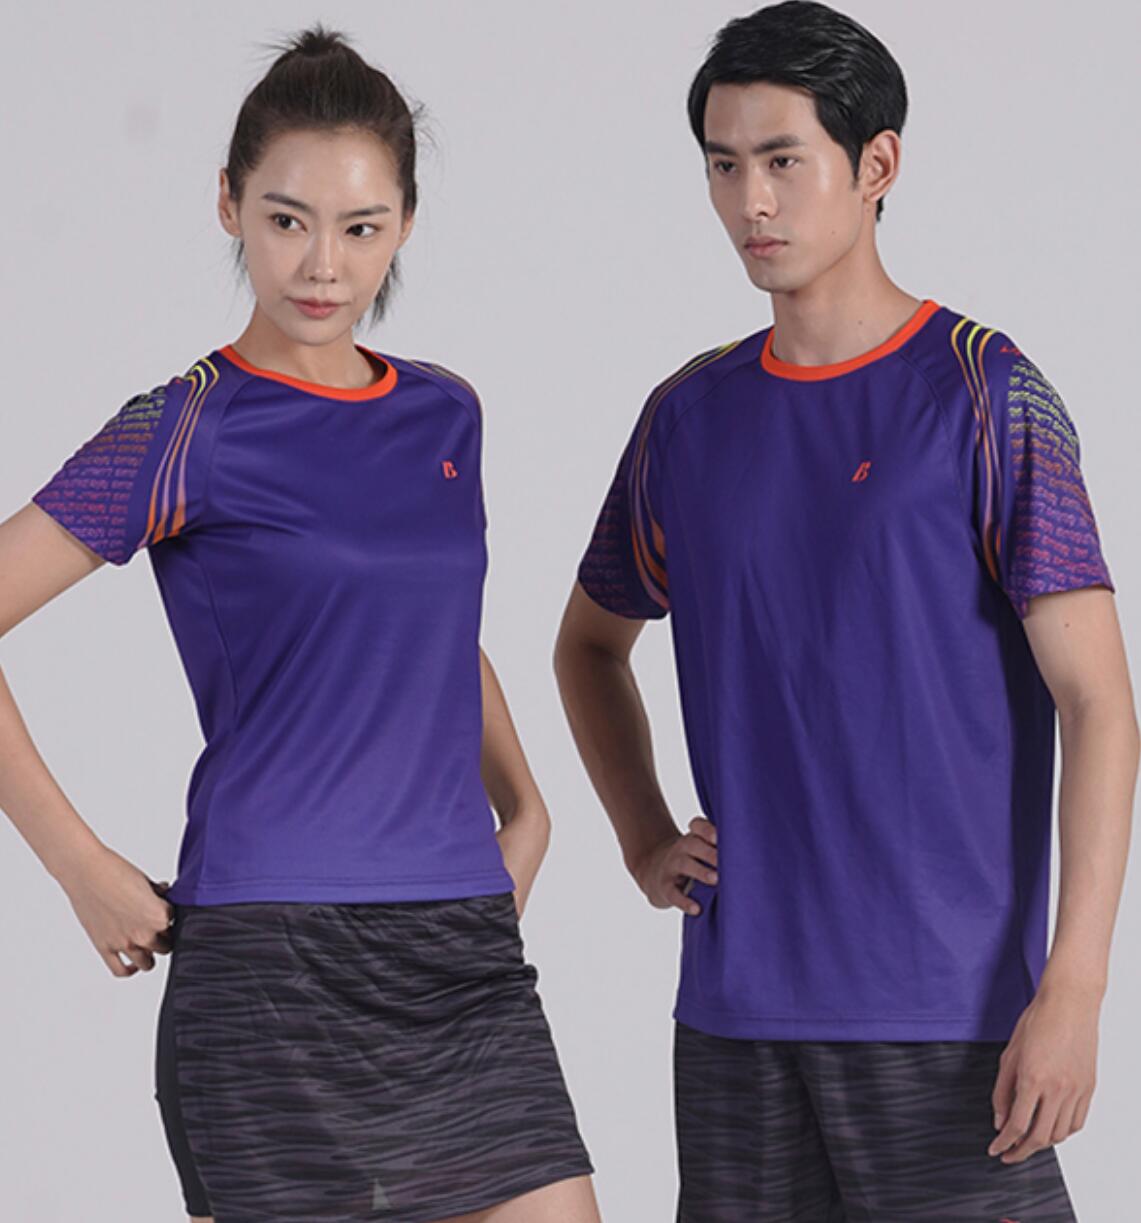 波力羽毛球服 男女款 专业运动衫 短袖T恤 比赛训练服 1CTLYZ037 紫色